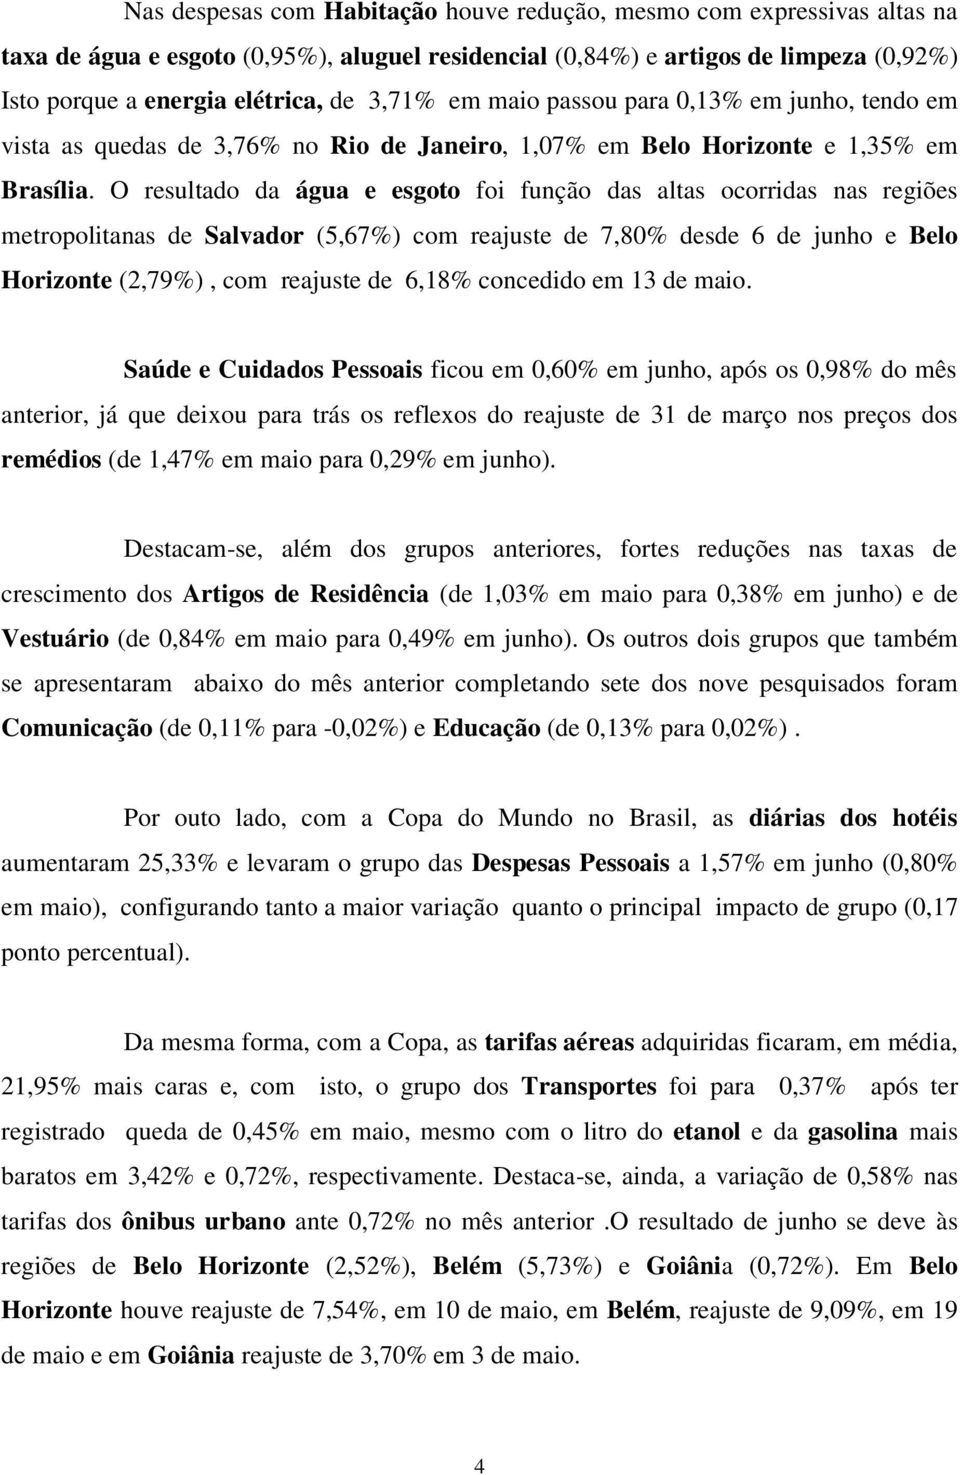 O resultado da água e esgoto foi função das altas ocorridas nas regiões metropolitanas de Salvador (5,67%) com reajuste de 7,80% desde 6 de junho e Belo Horizonte (2,79%), com reajuste de 6,18%